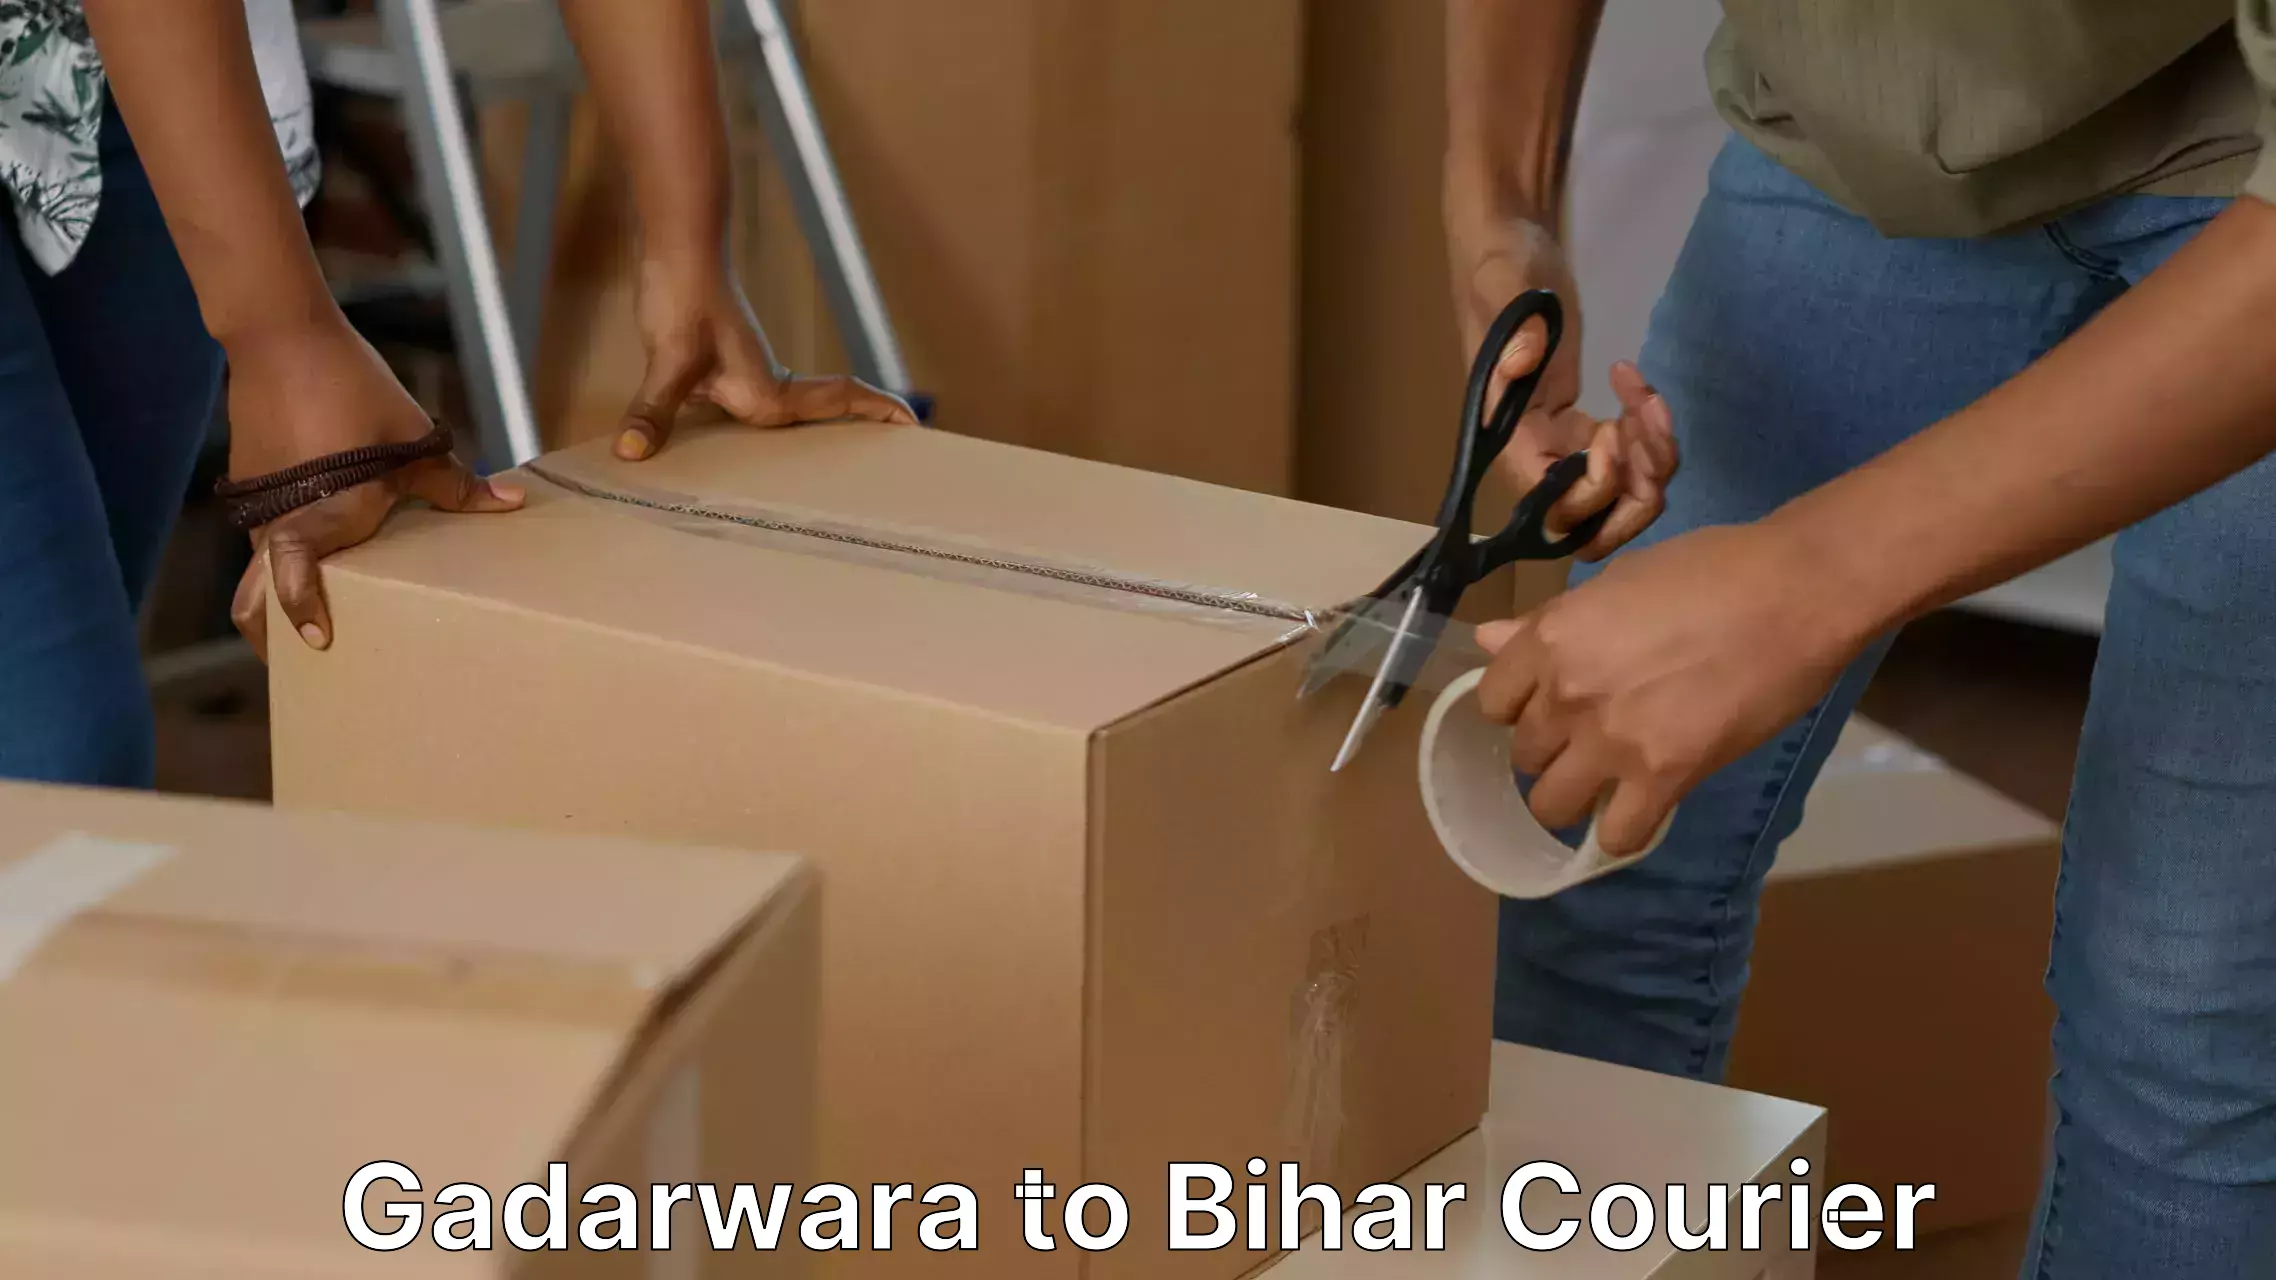 Moving and storage services Gadarwara to Aurangabad Bihar